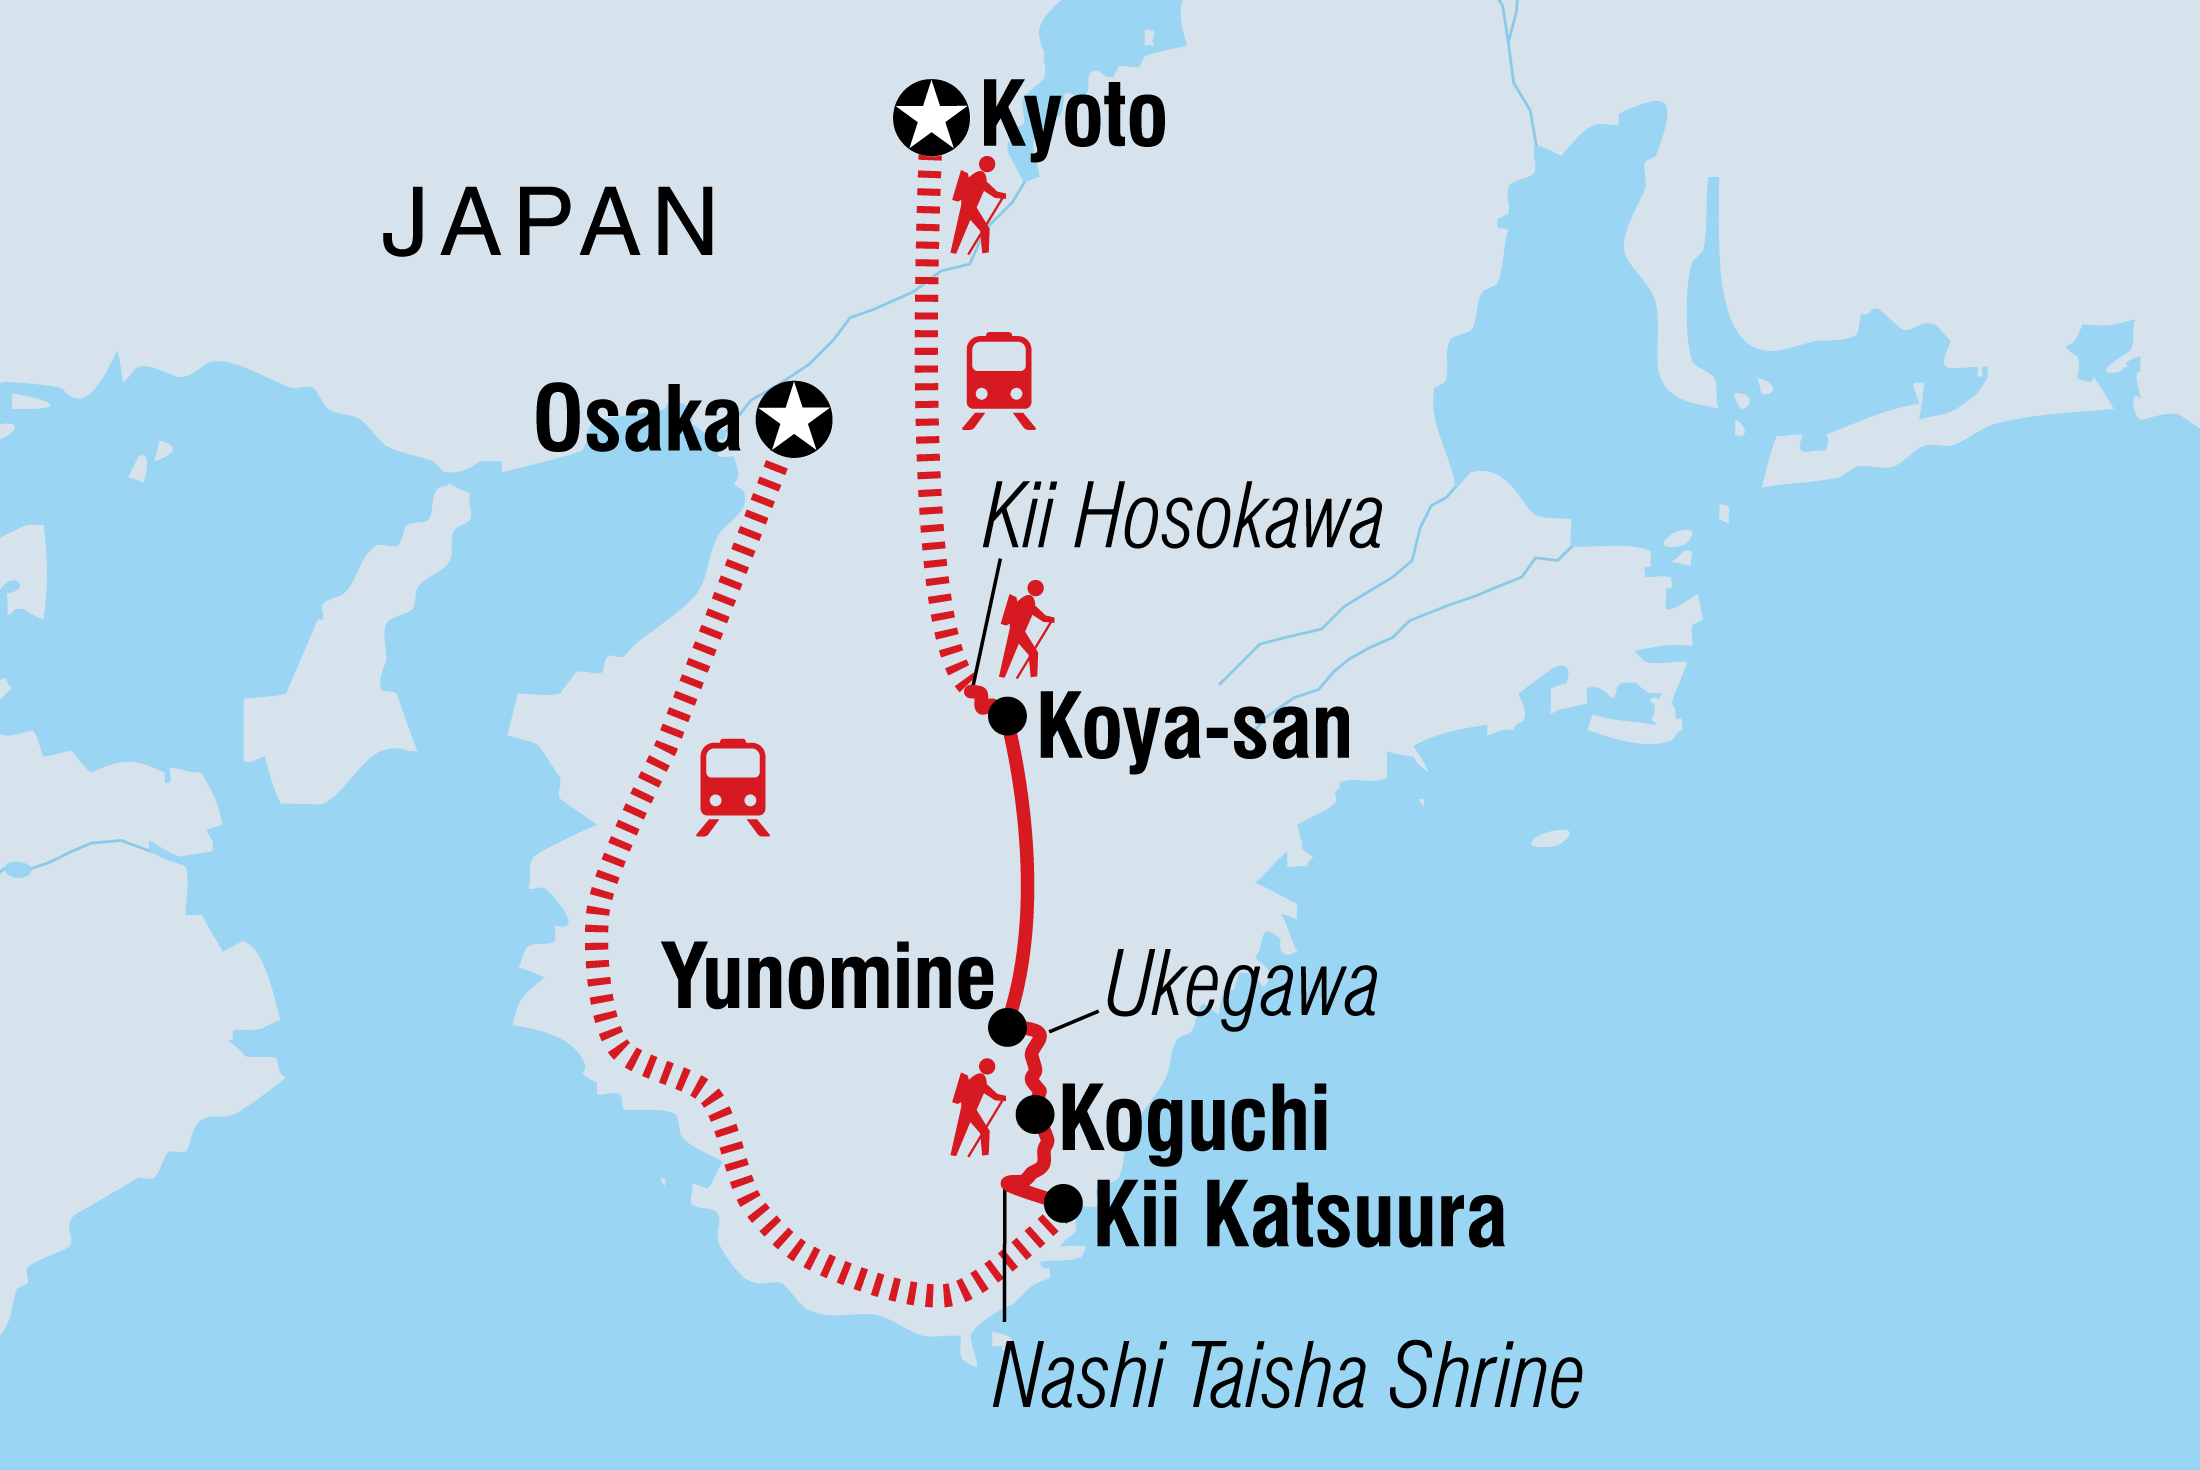 Japan: Koya-san & Kumano Kodo Trek